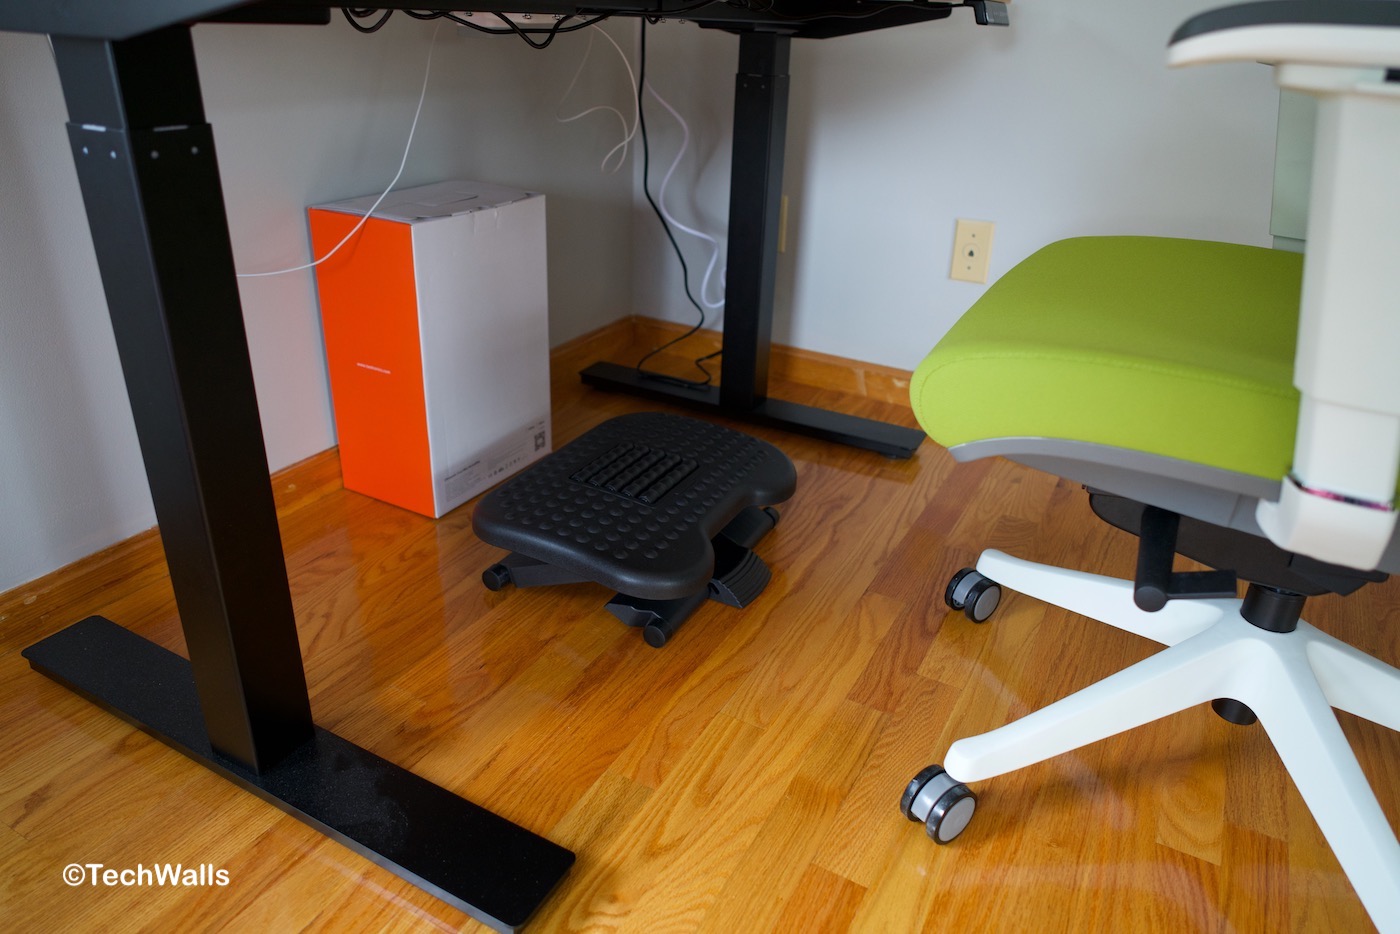 HUANUO HNFR4 Adjustable Under-Desk Footrest Review - TechWalls